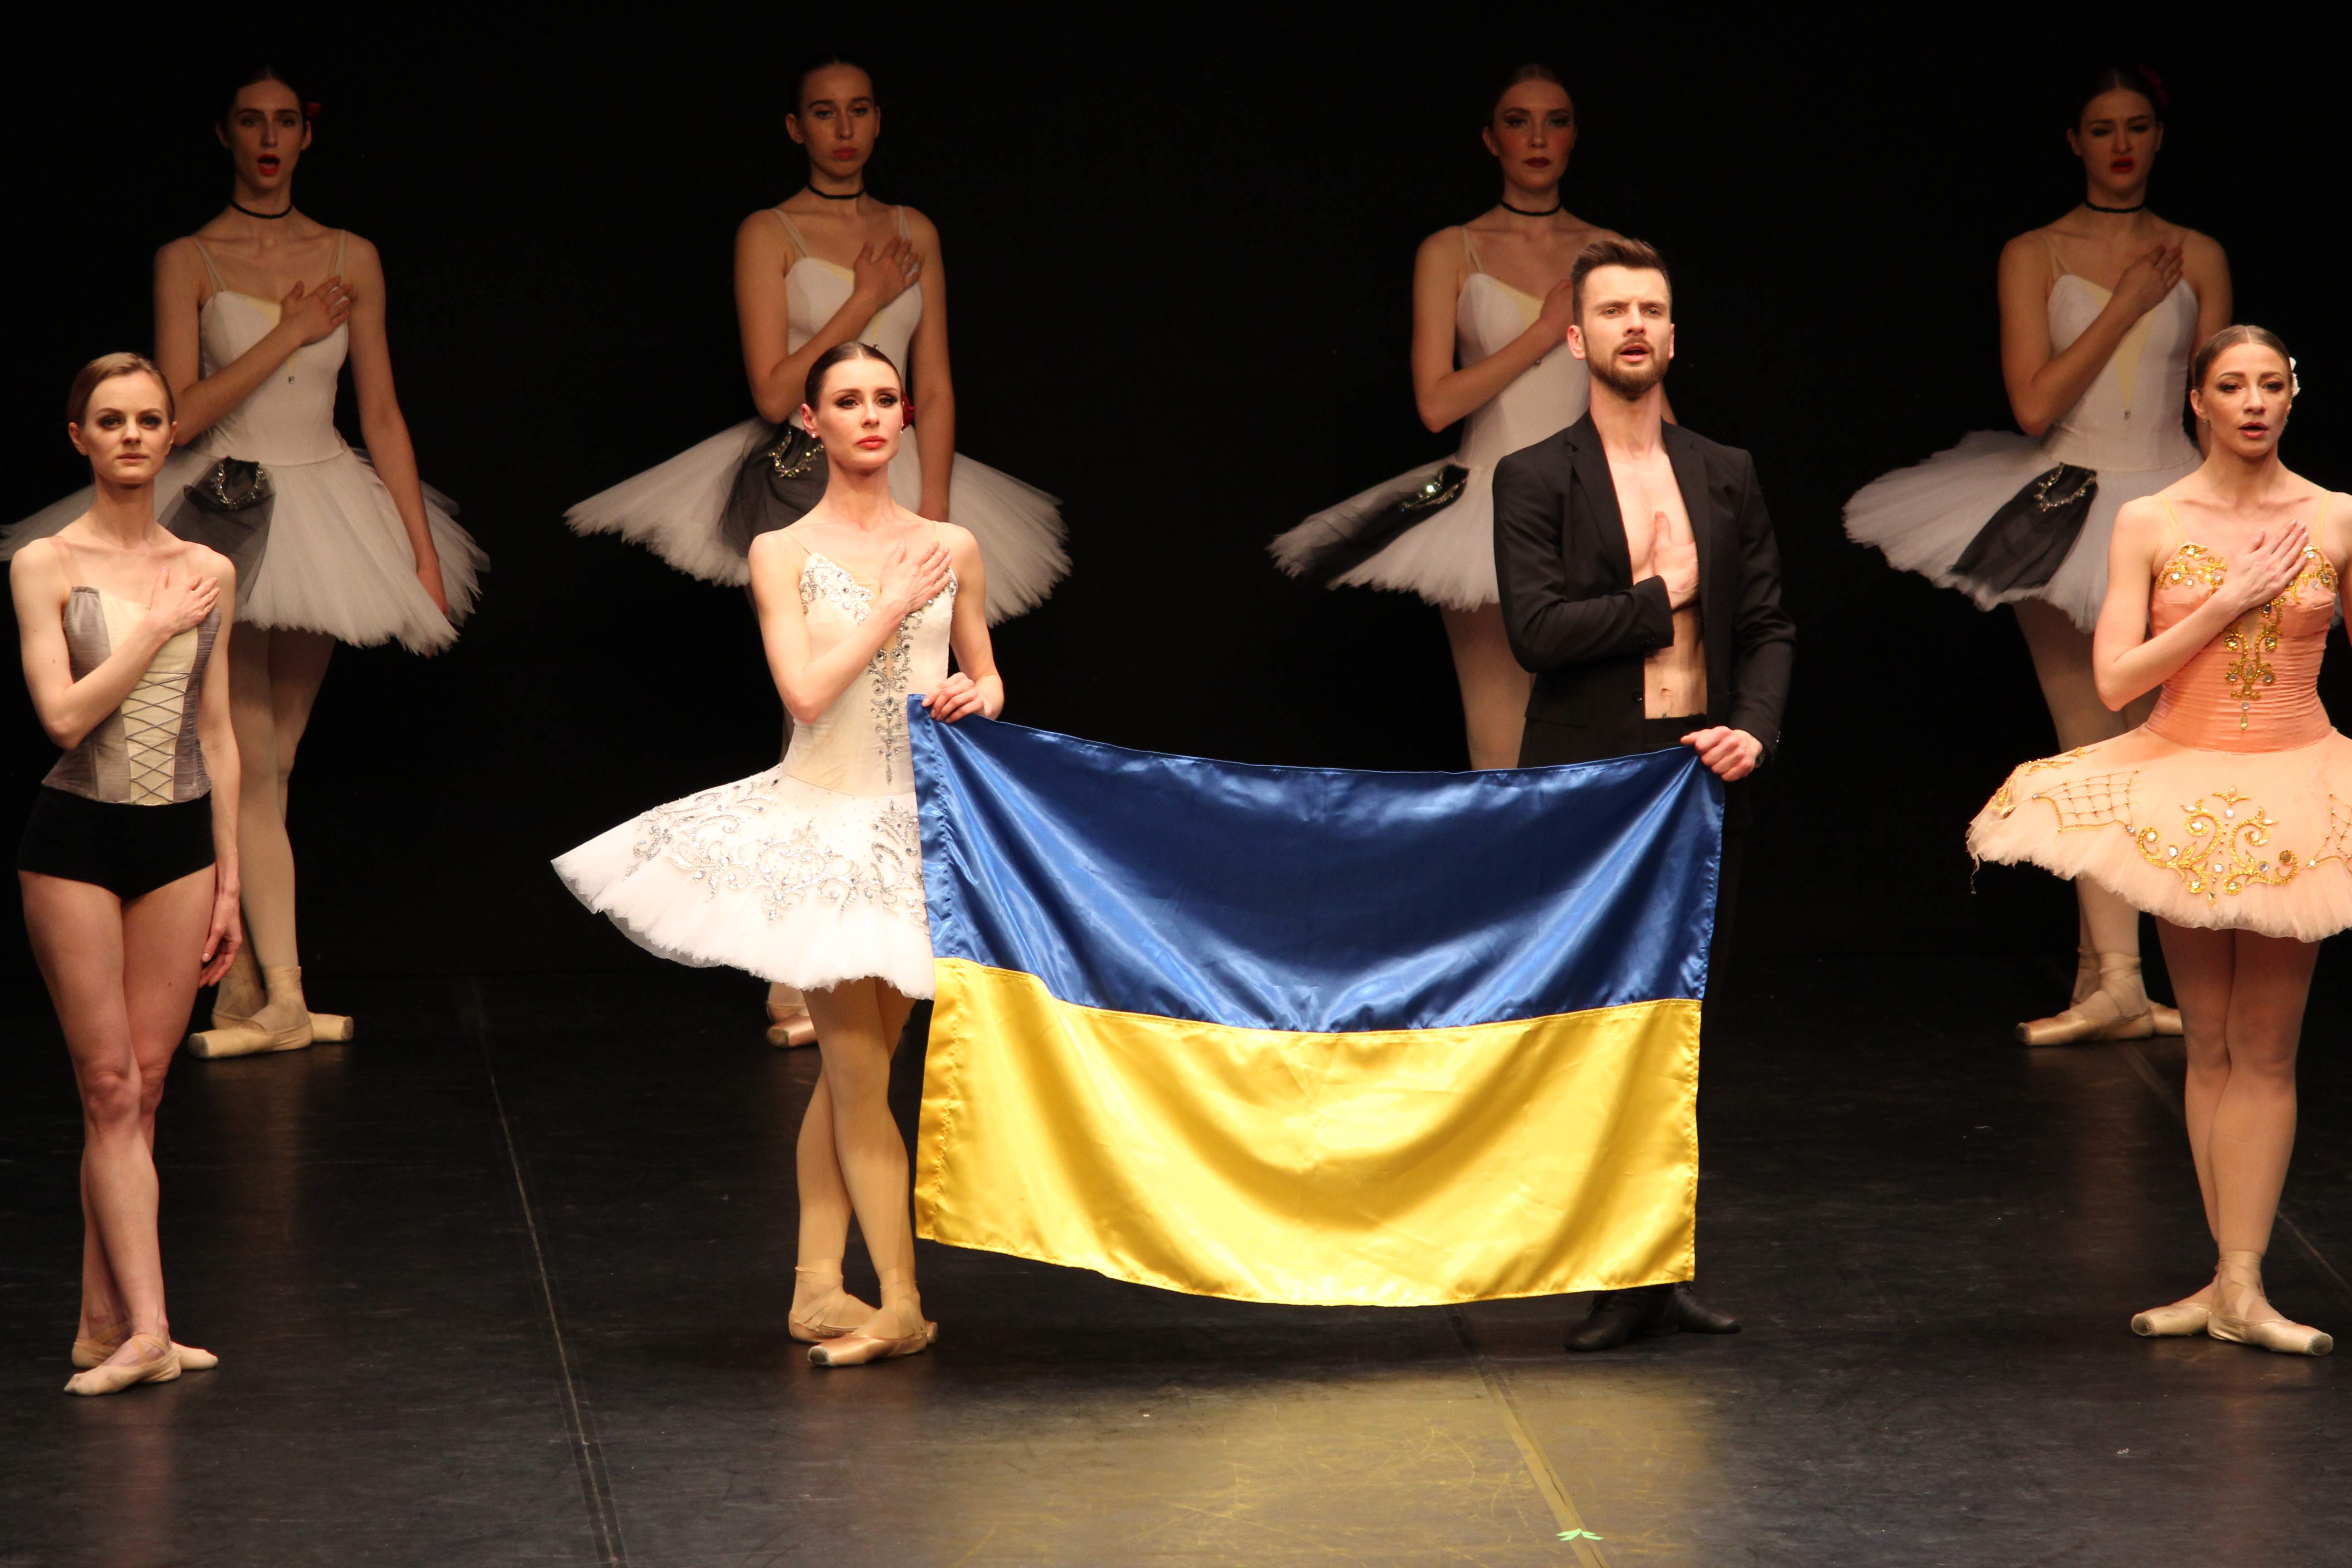 Disconovità Ufficio Stampa: Ukrainian Classical Ballet